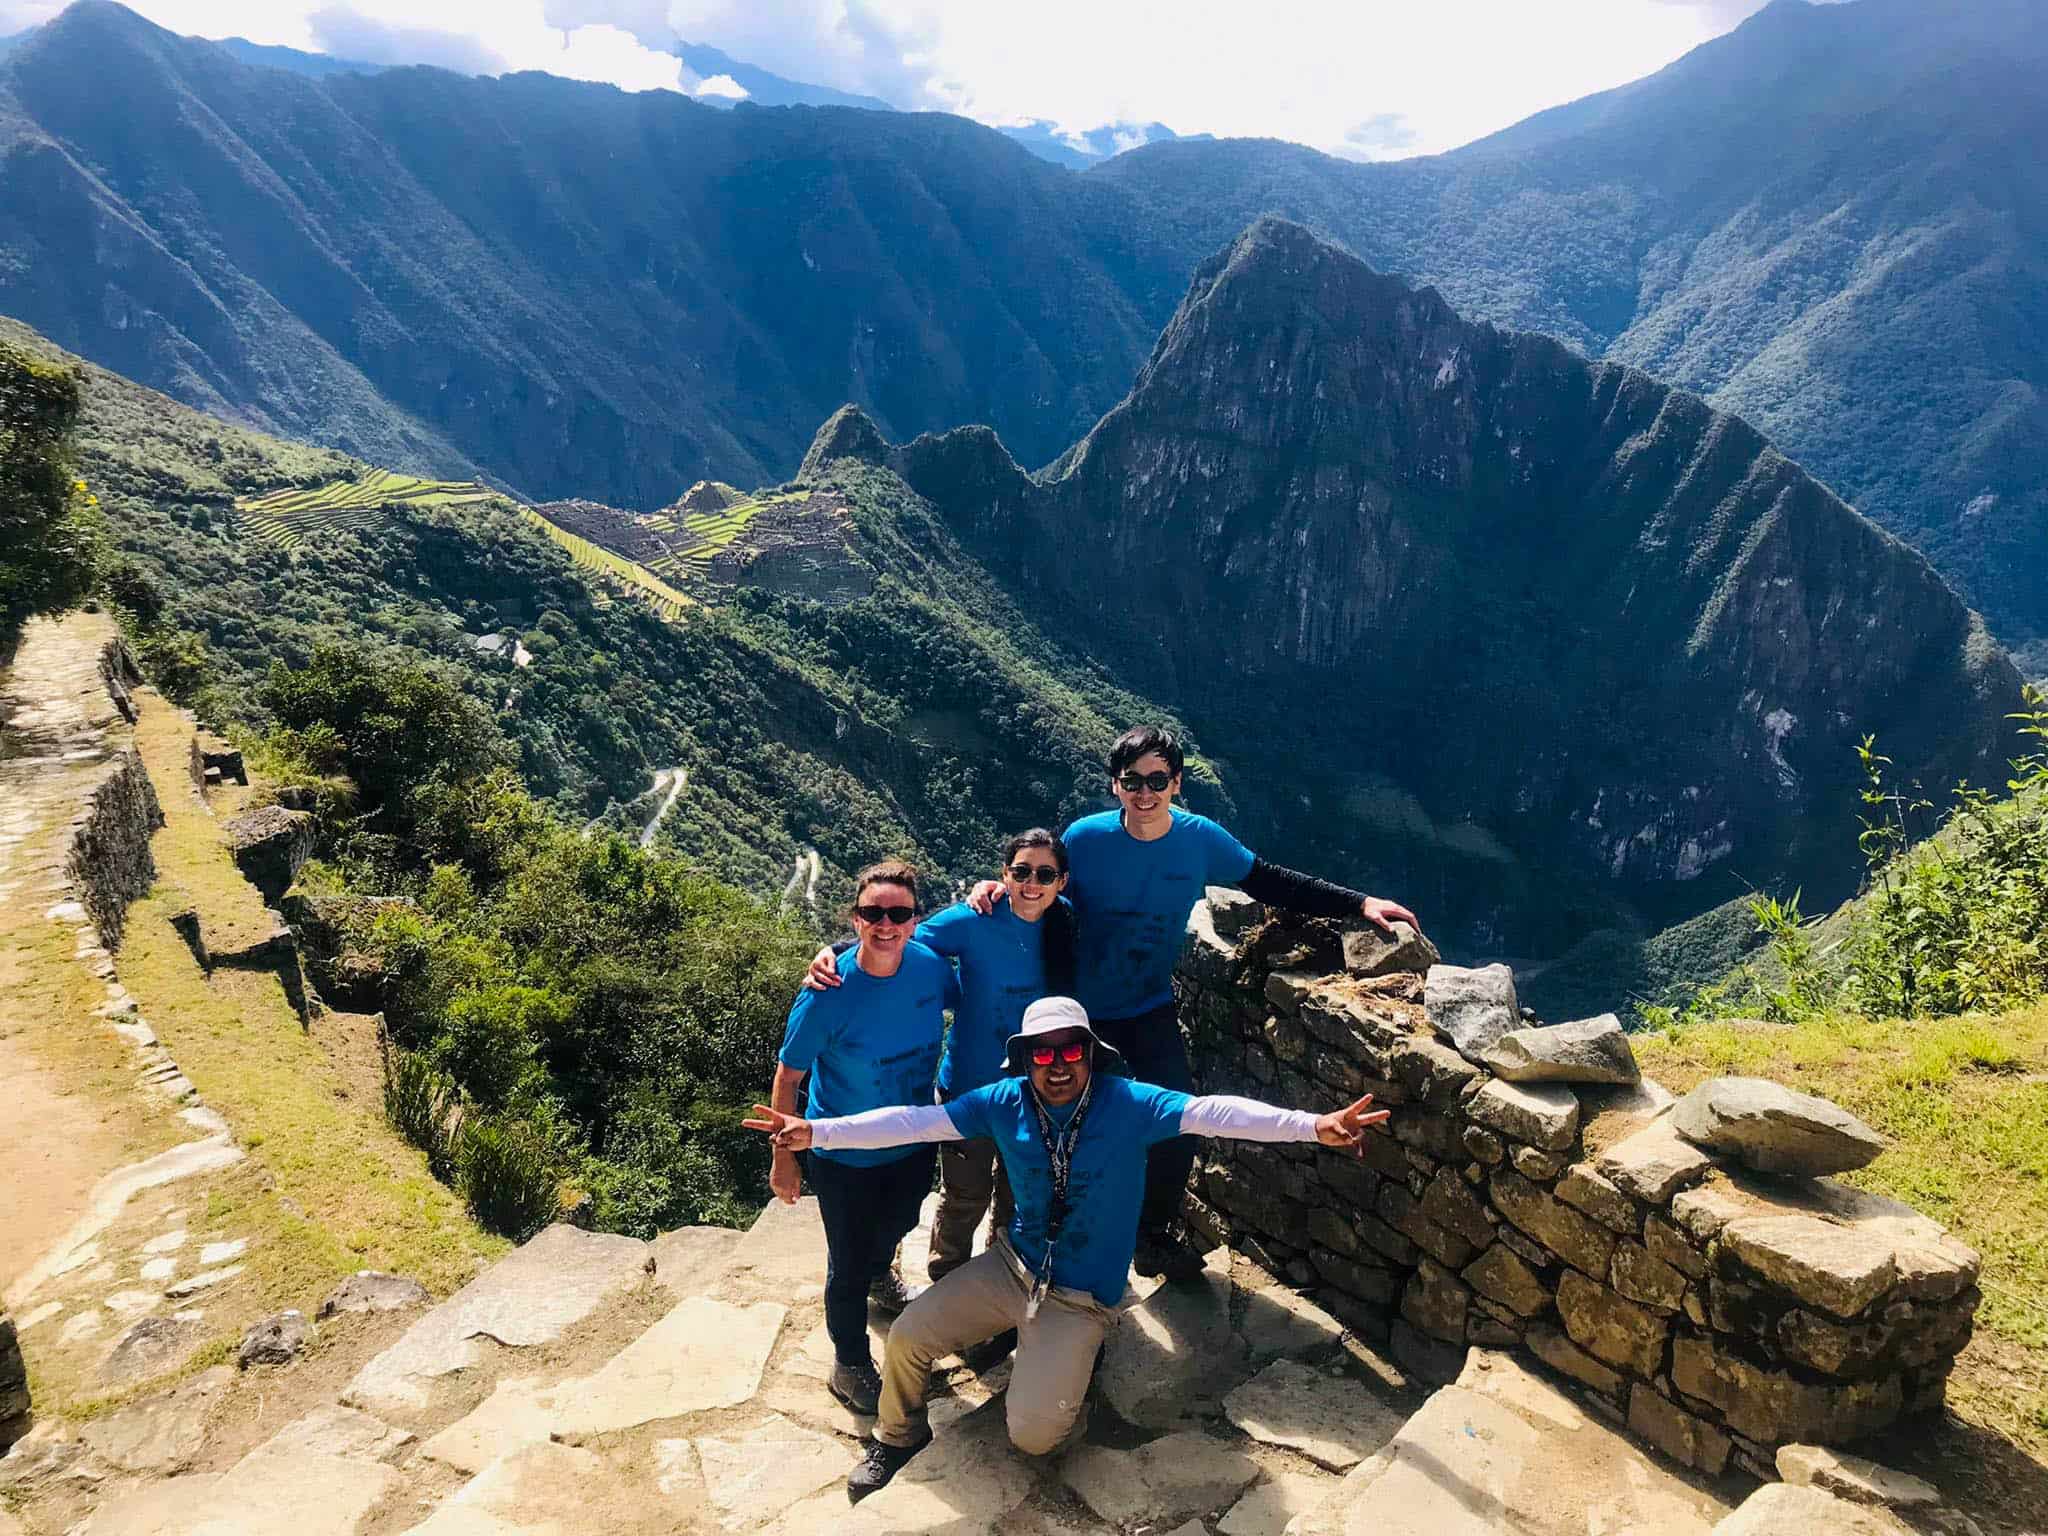 Primera vista de Machu Picchu desde Intipunku durante el tour privado del Camino Inca